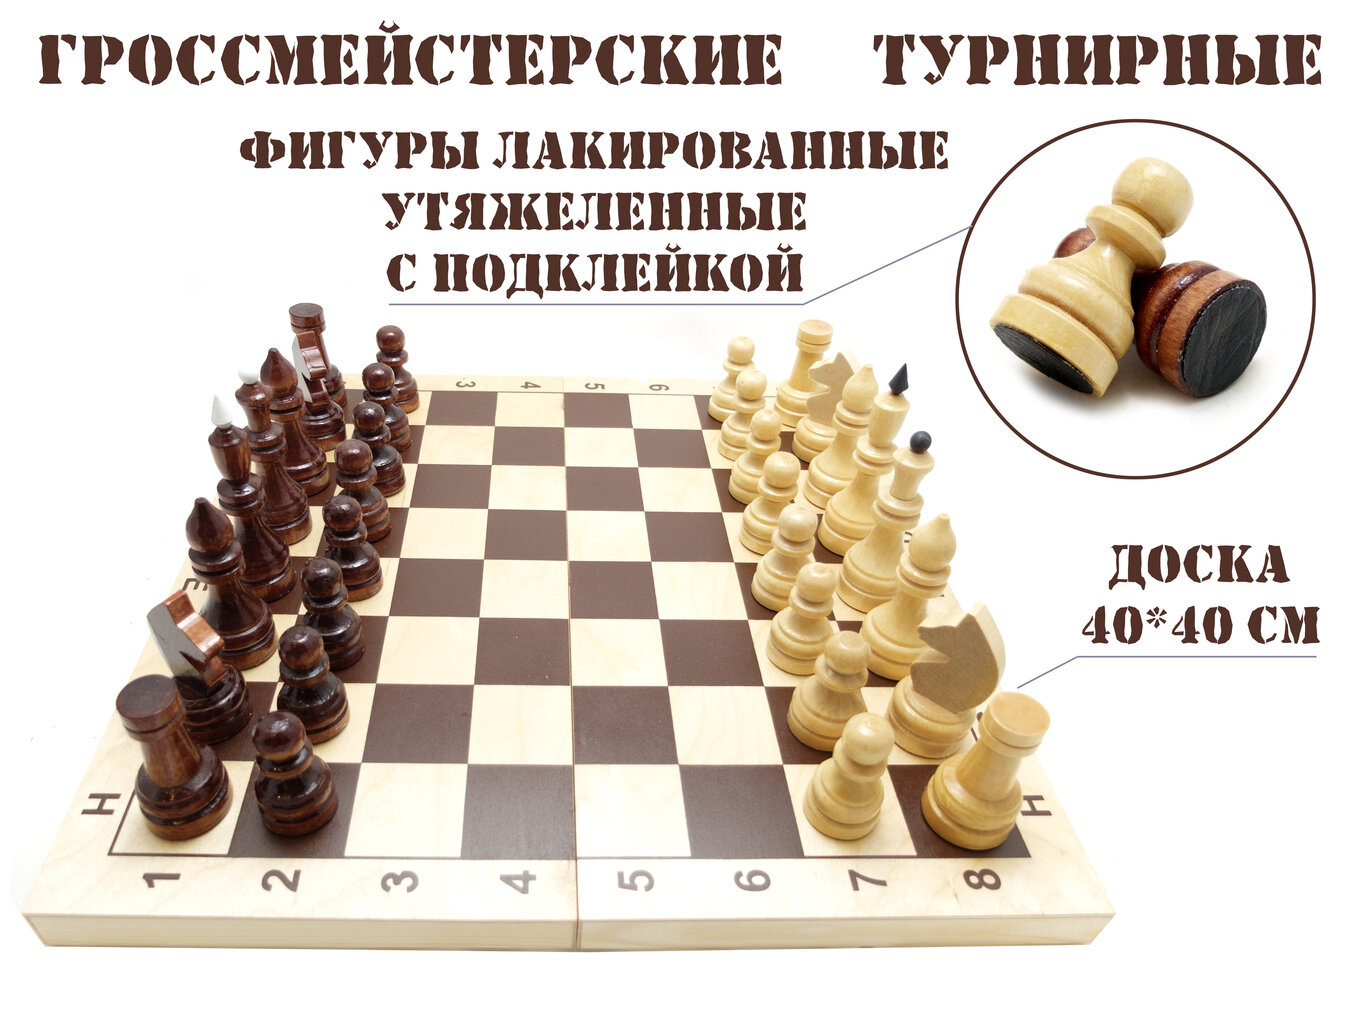 Шахматы орловская ладья E-2 гроссмейстерские турнирные утяжеленные с доской 40*40 см